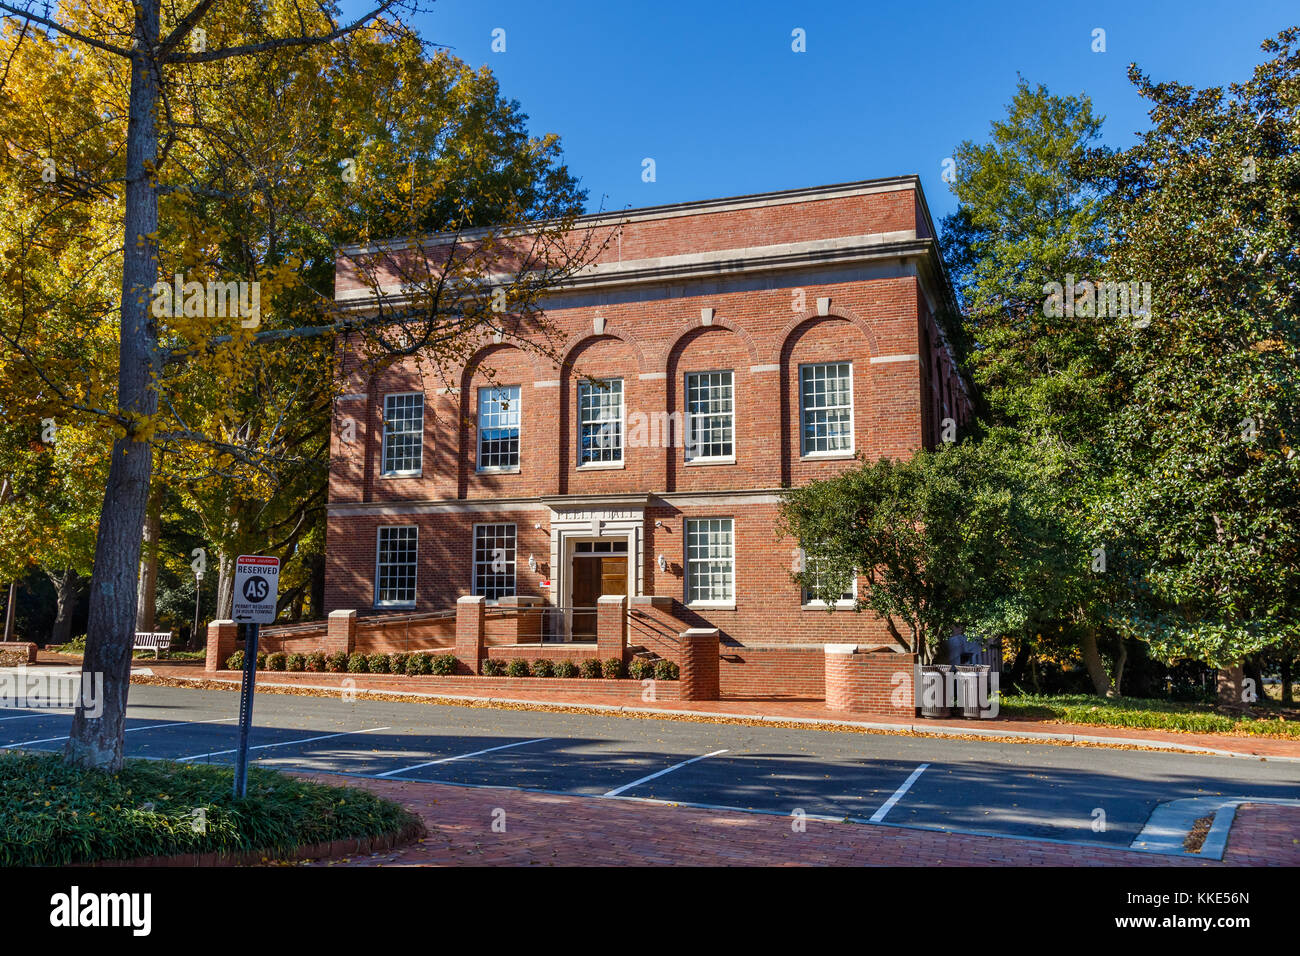 RALEIGH, NC, Stati Uniti d'America - 24 novembre: Peele Hall il 24 novembre 2017 presso la North Carolina State University in Raleigh, North Carolina. Foto Stock